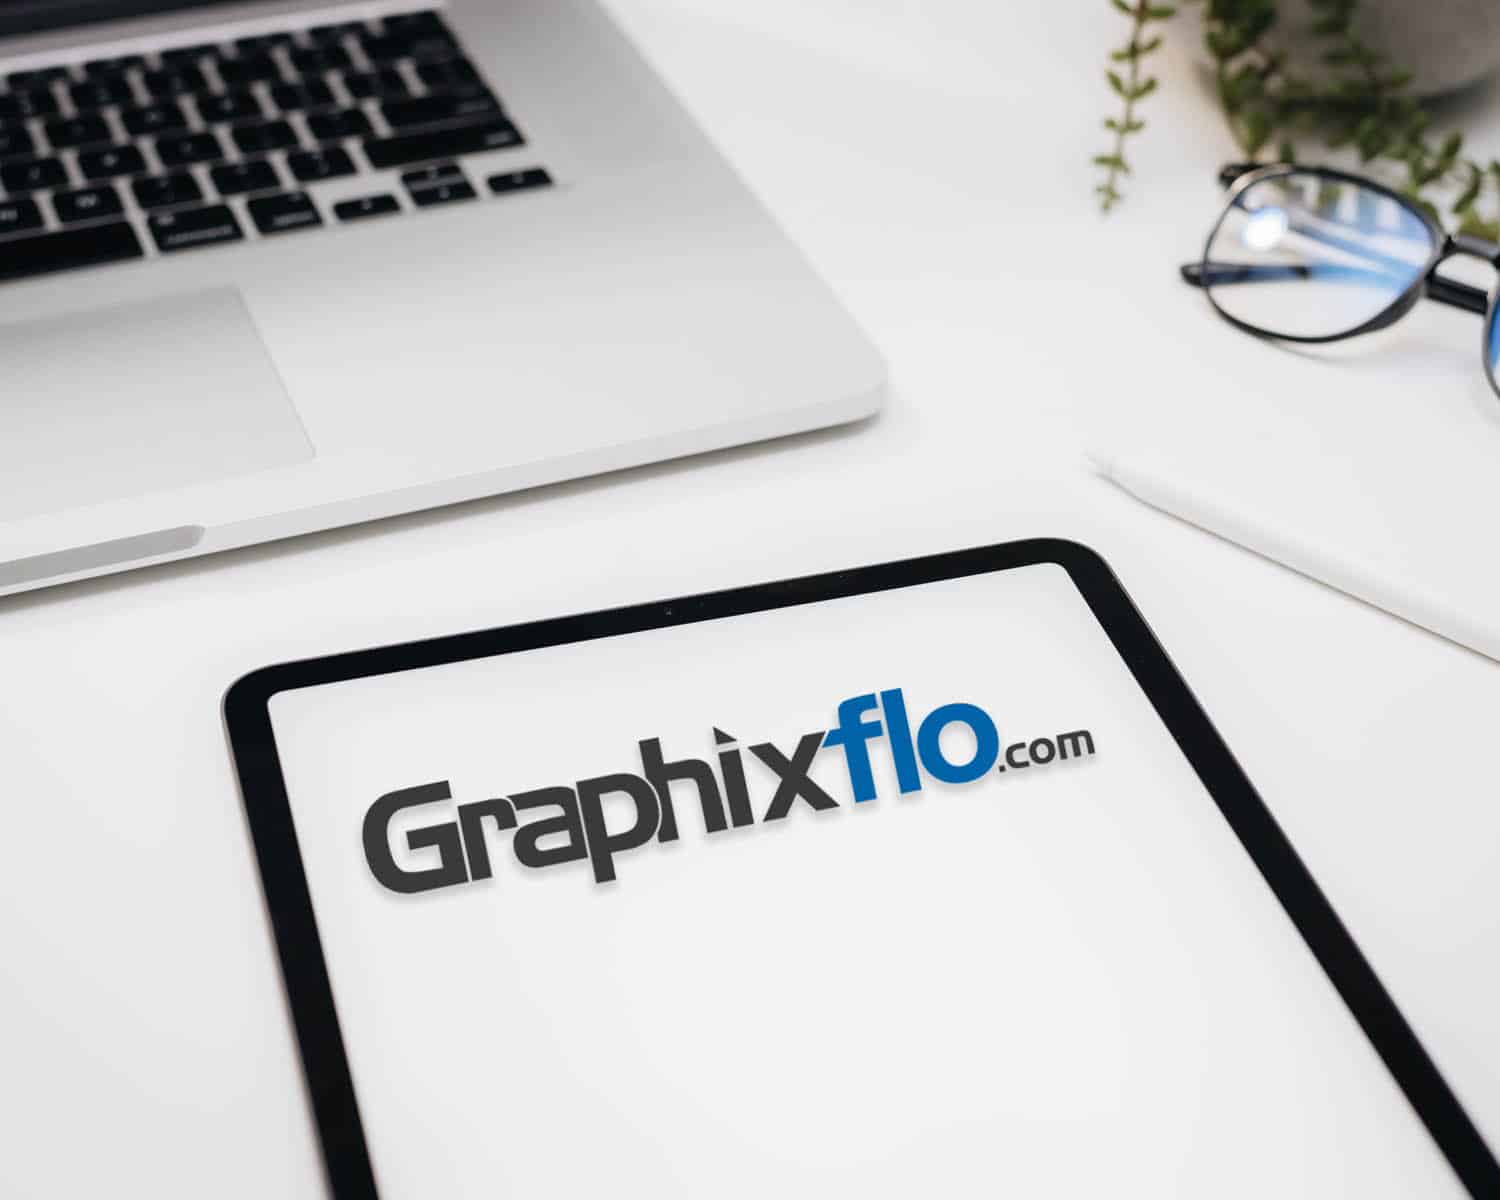 GraphixFlo in Hamilton Ontario | Local Web Design Print SEO